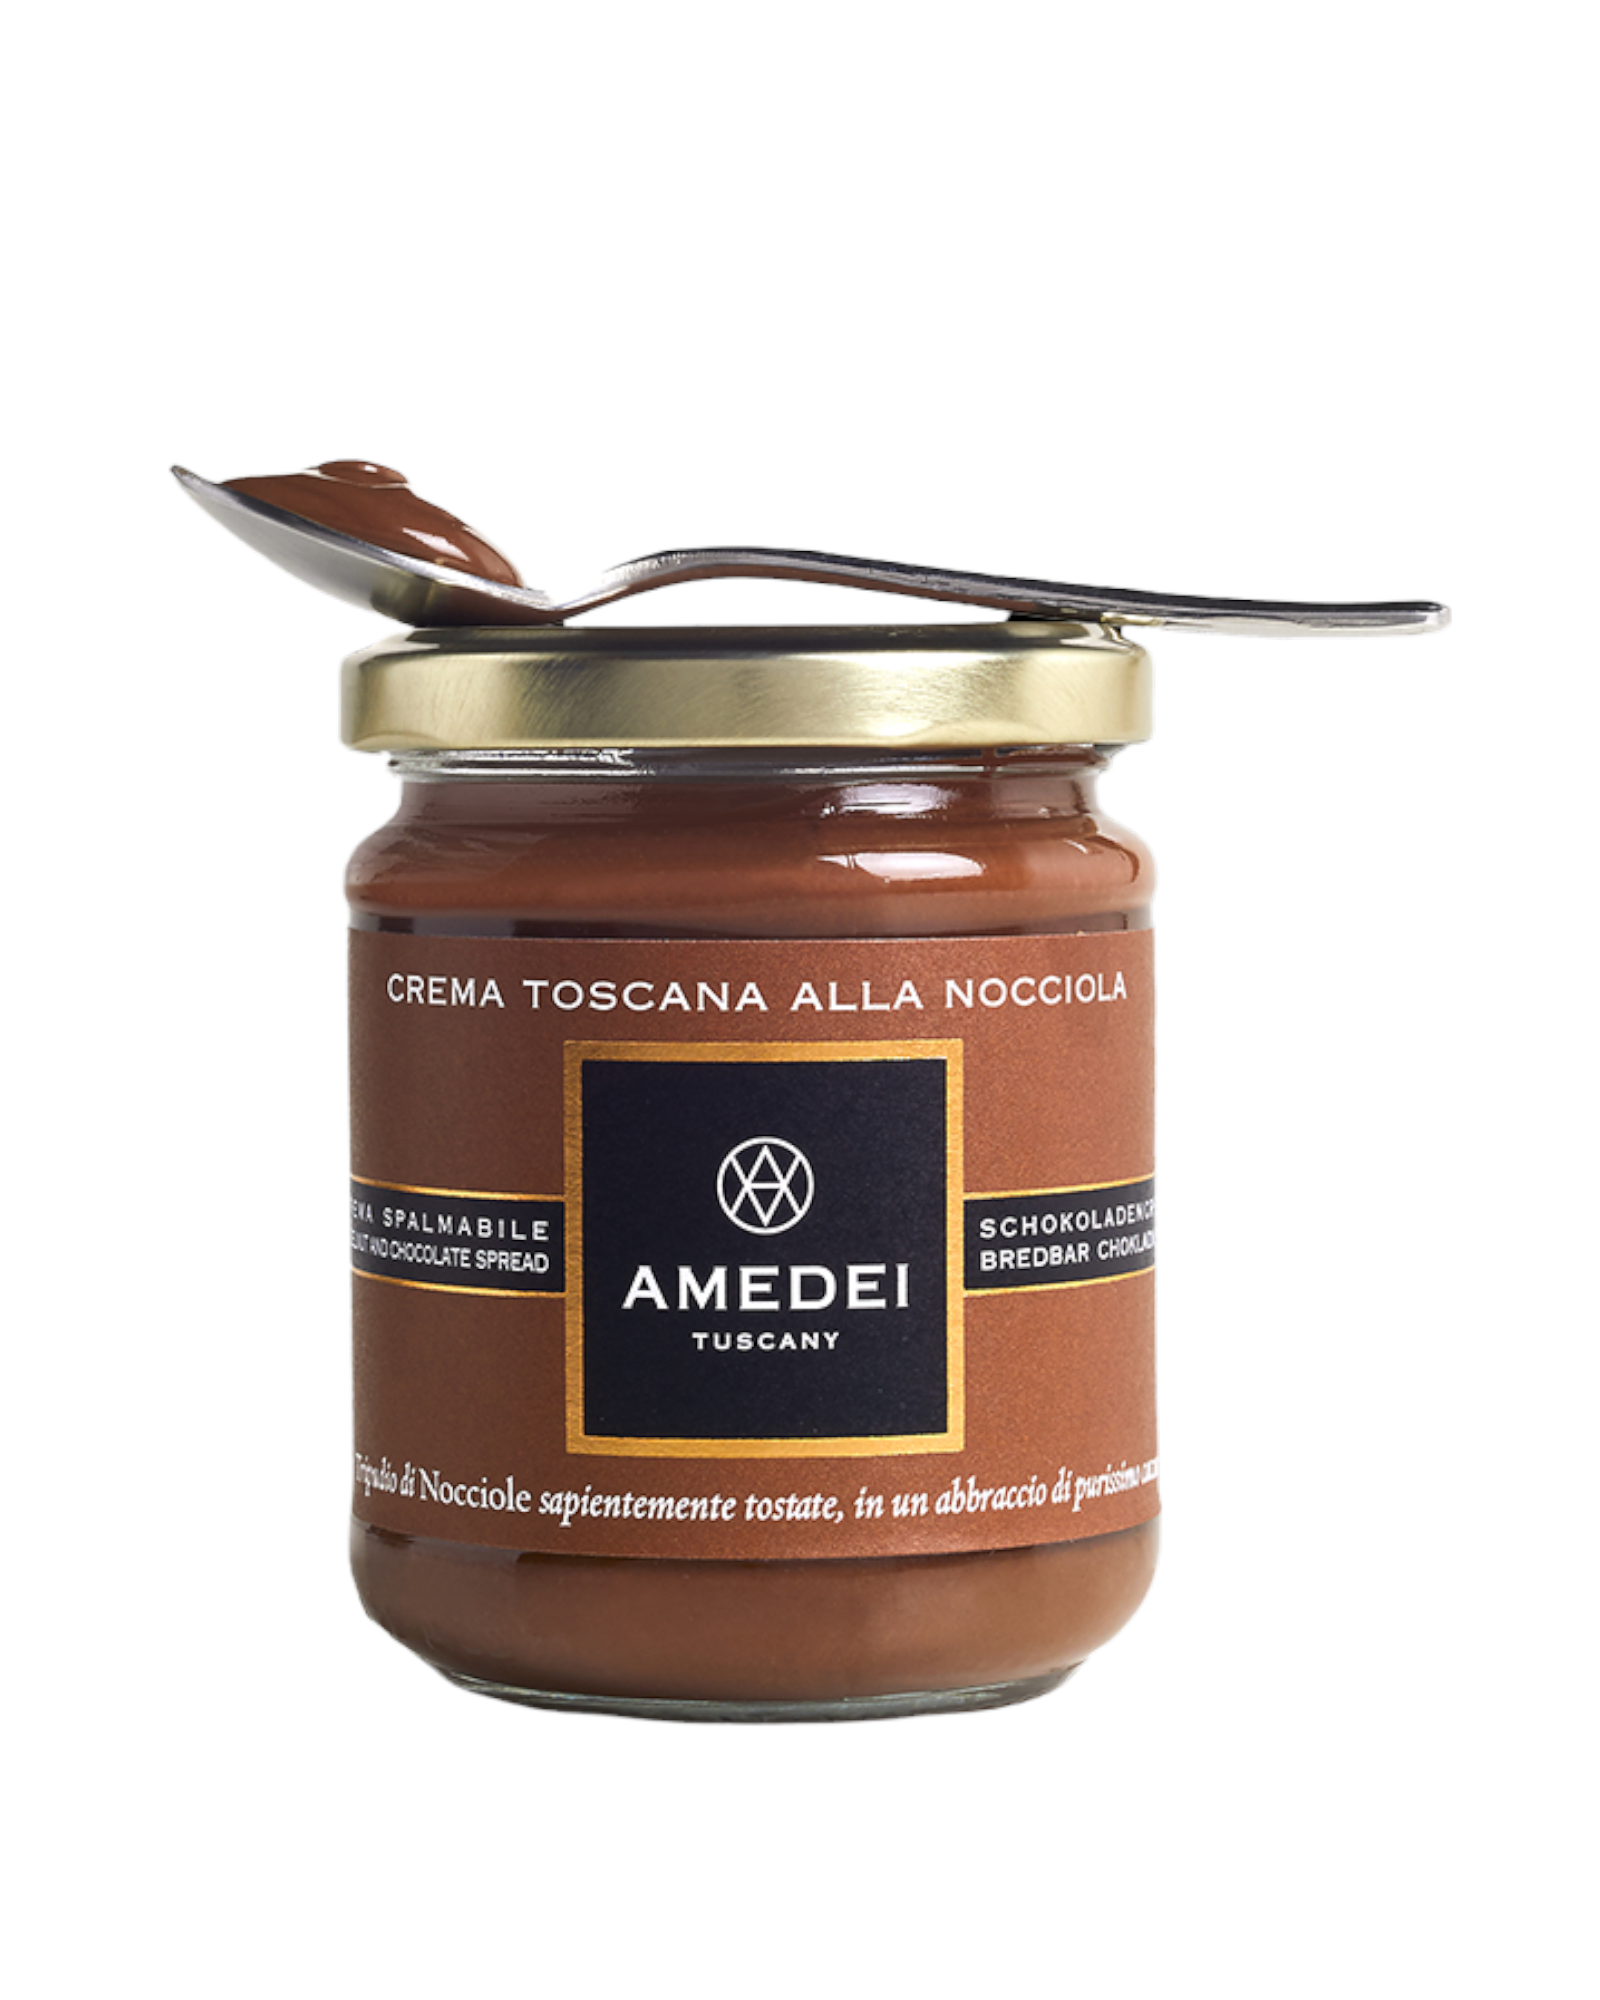 Amedei Crema Toscana Hazelnuts Spread